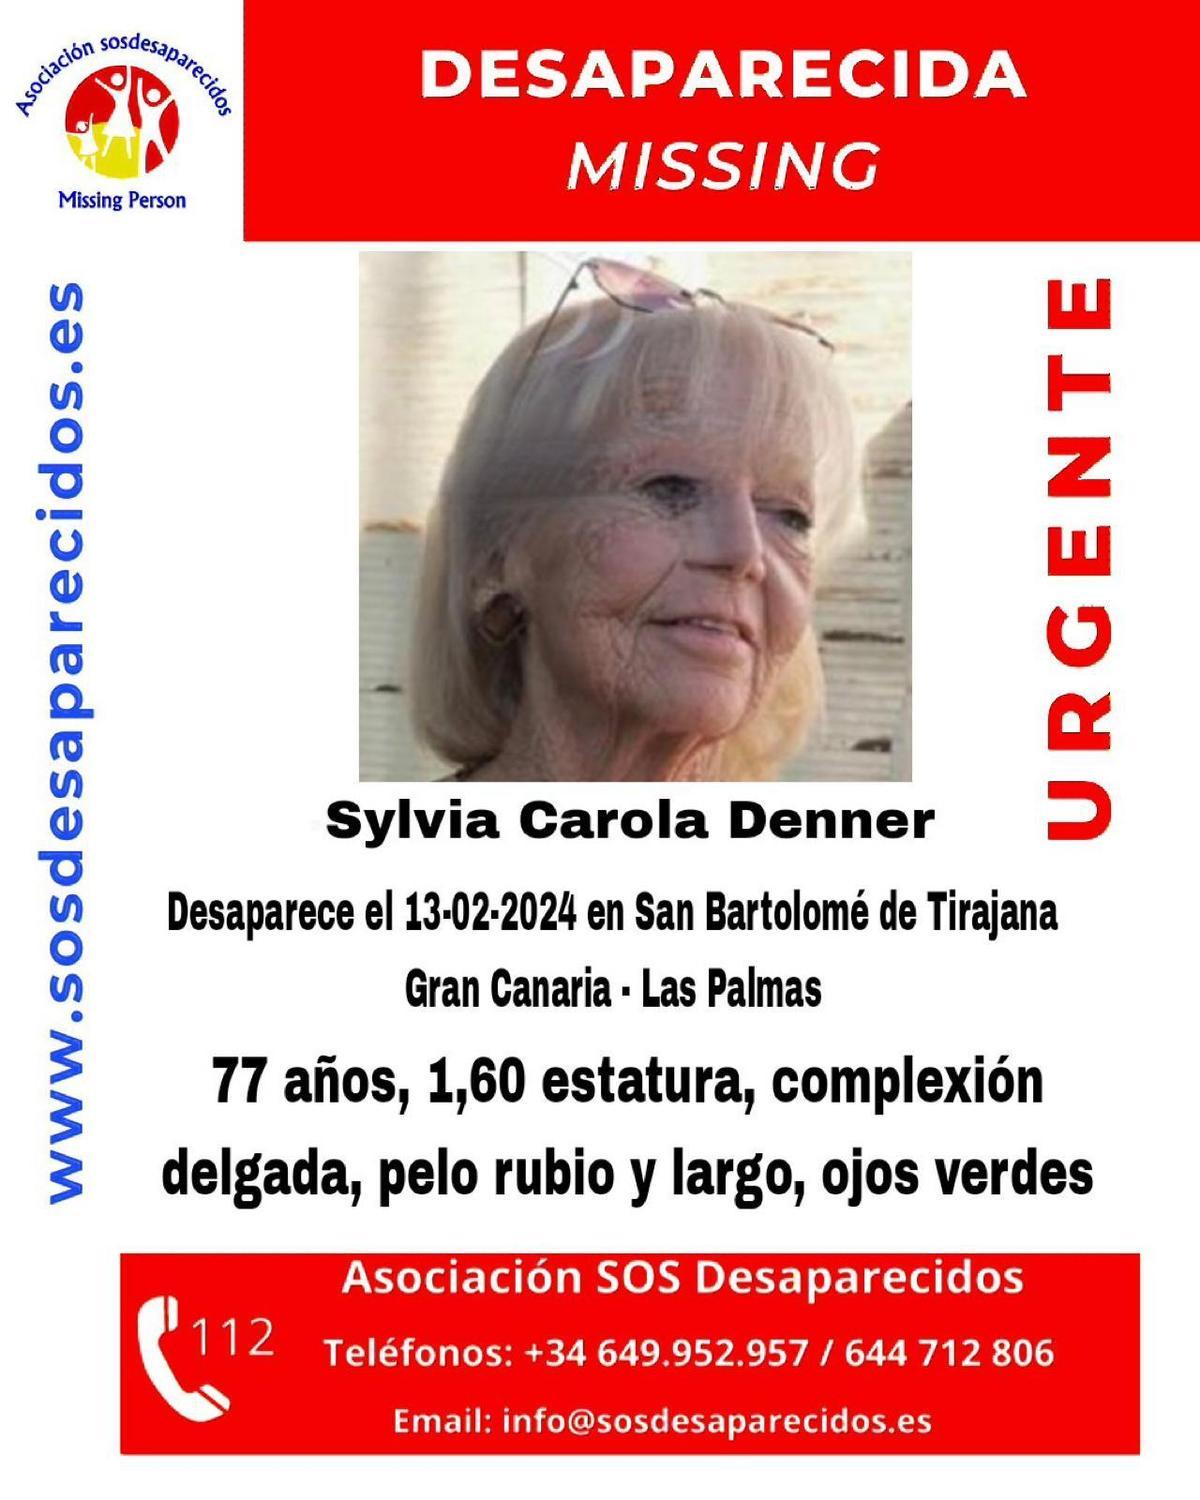 La desaparecida Sylvia Carola Denner